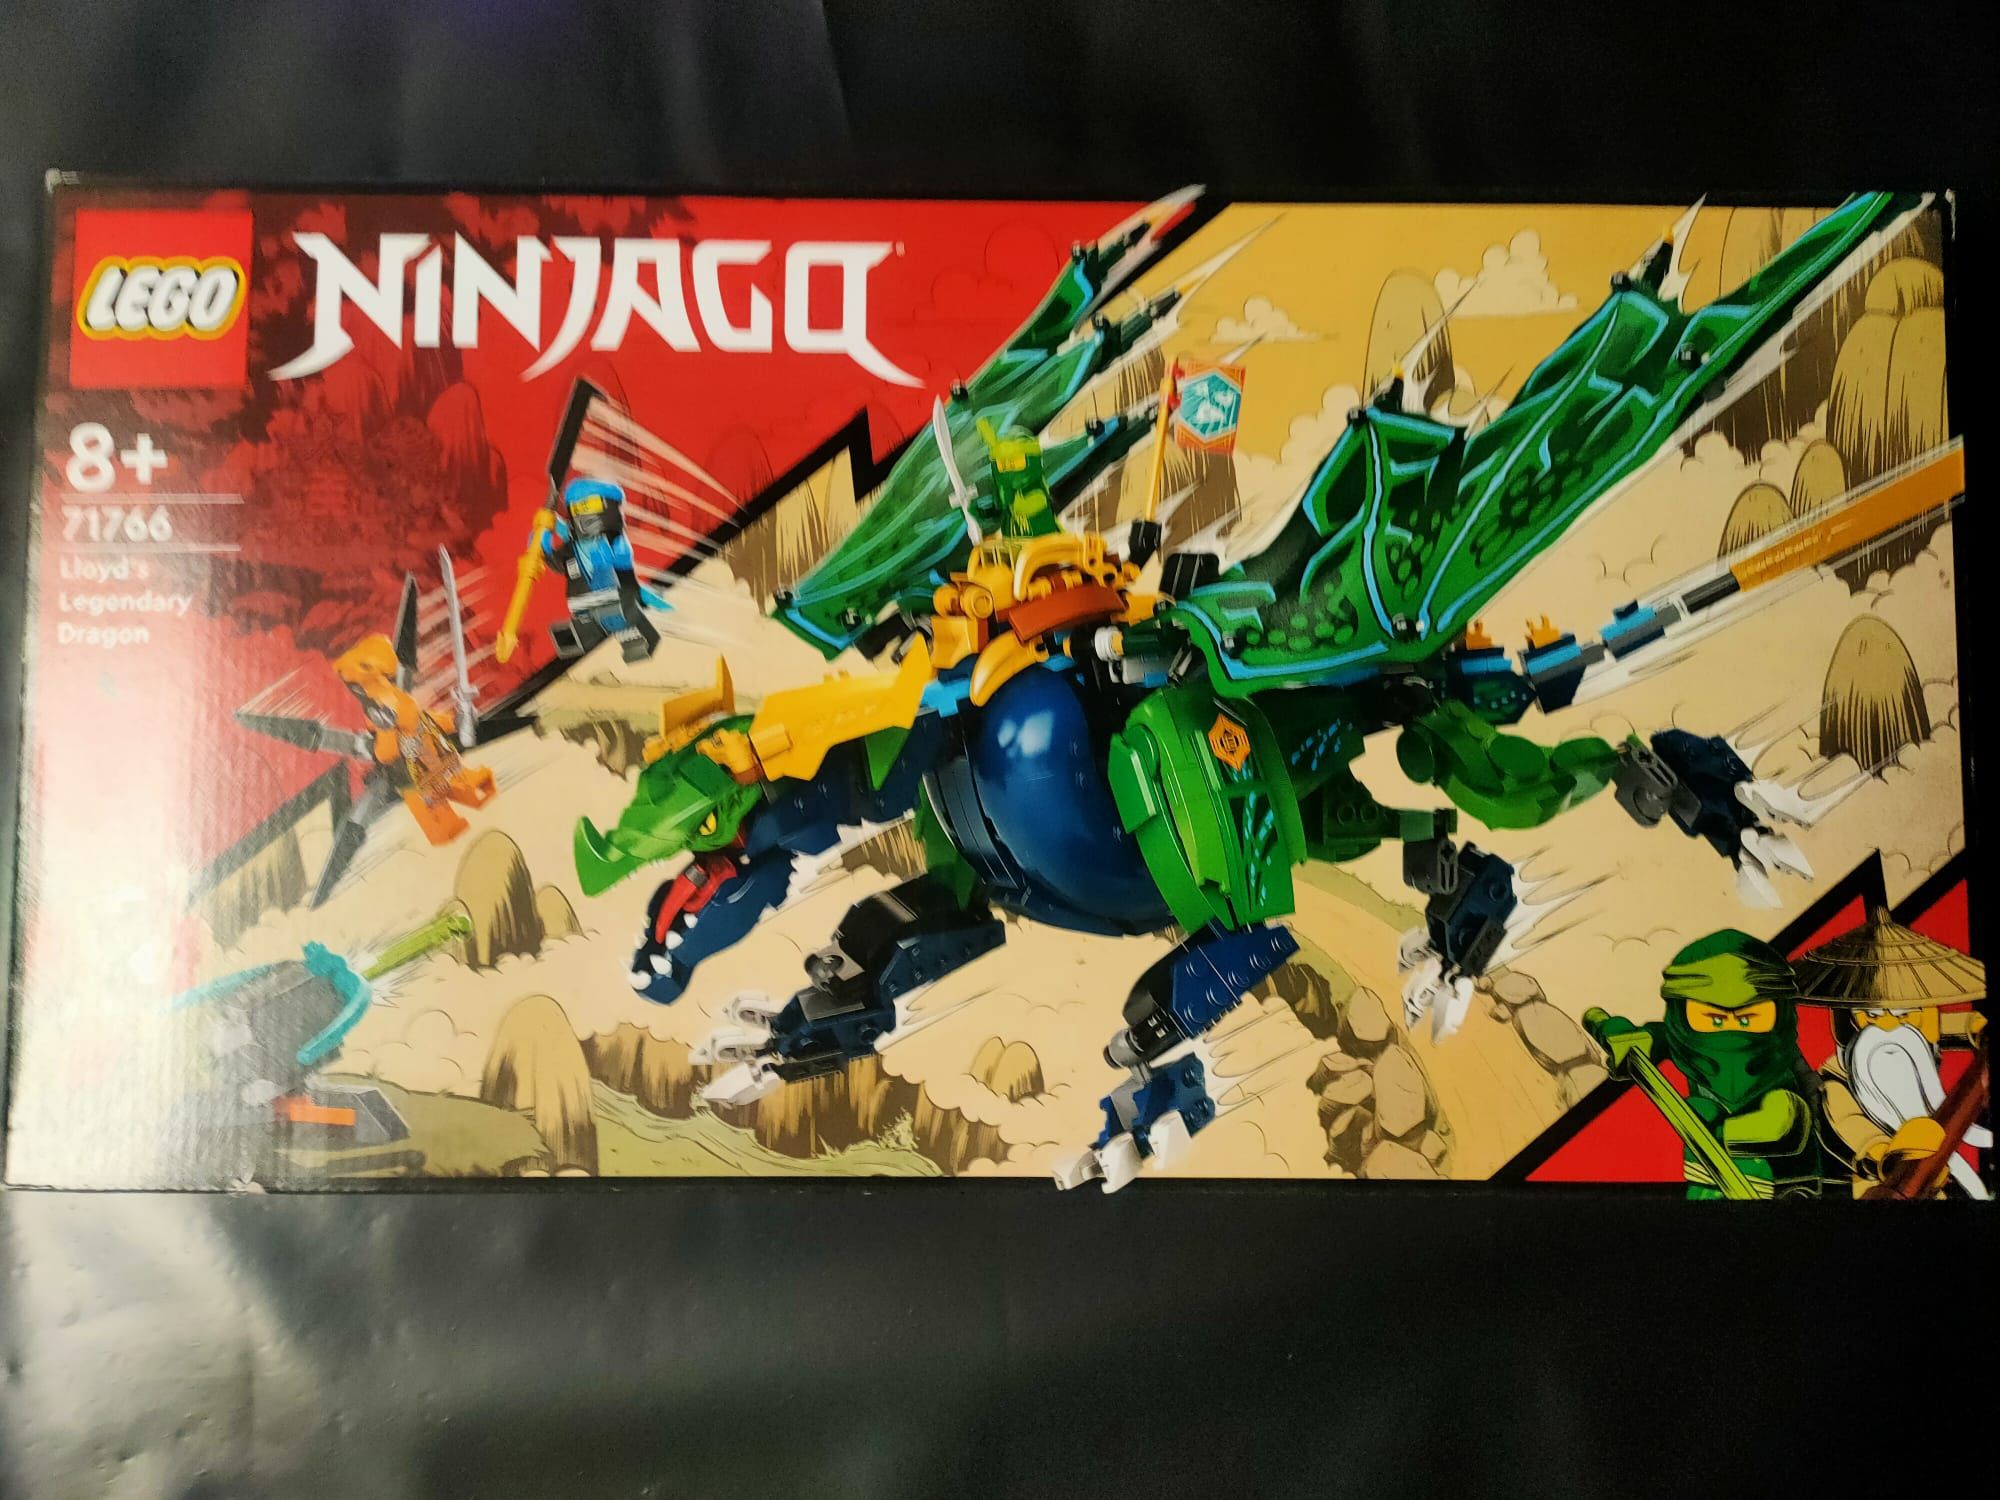 LEGO Ninjago O Dragão Lendário do Lloyd 71766